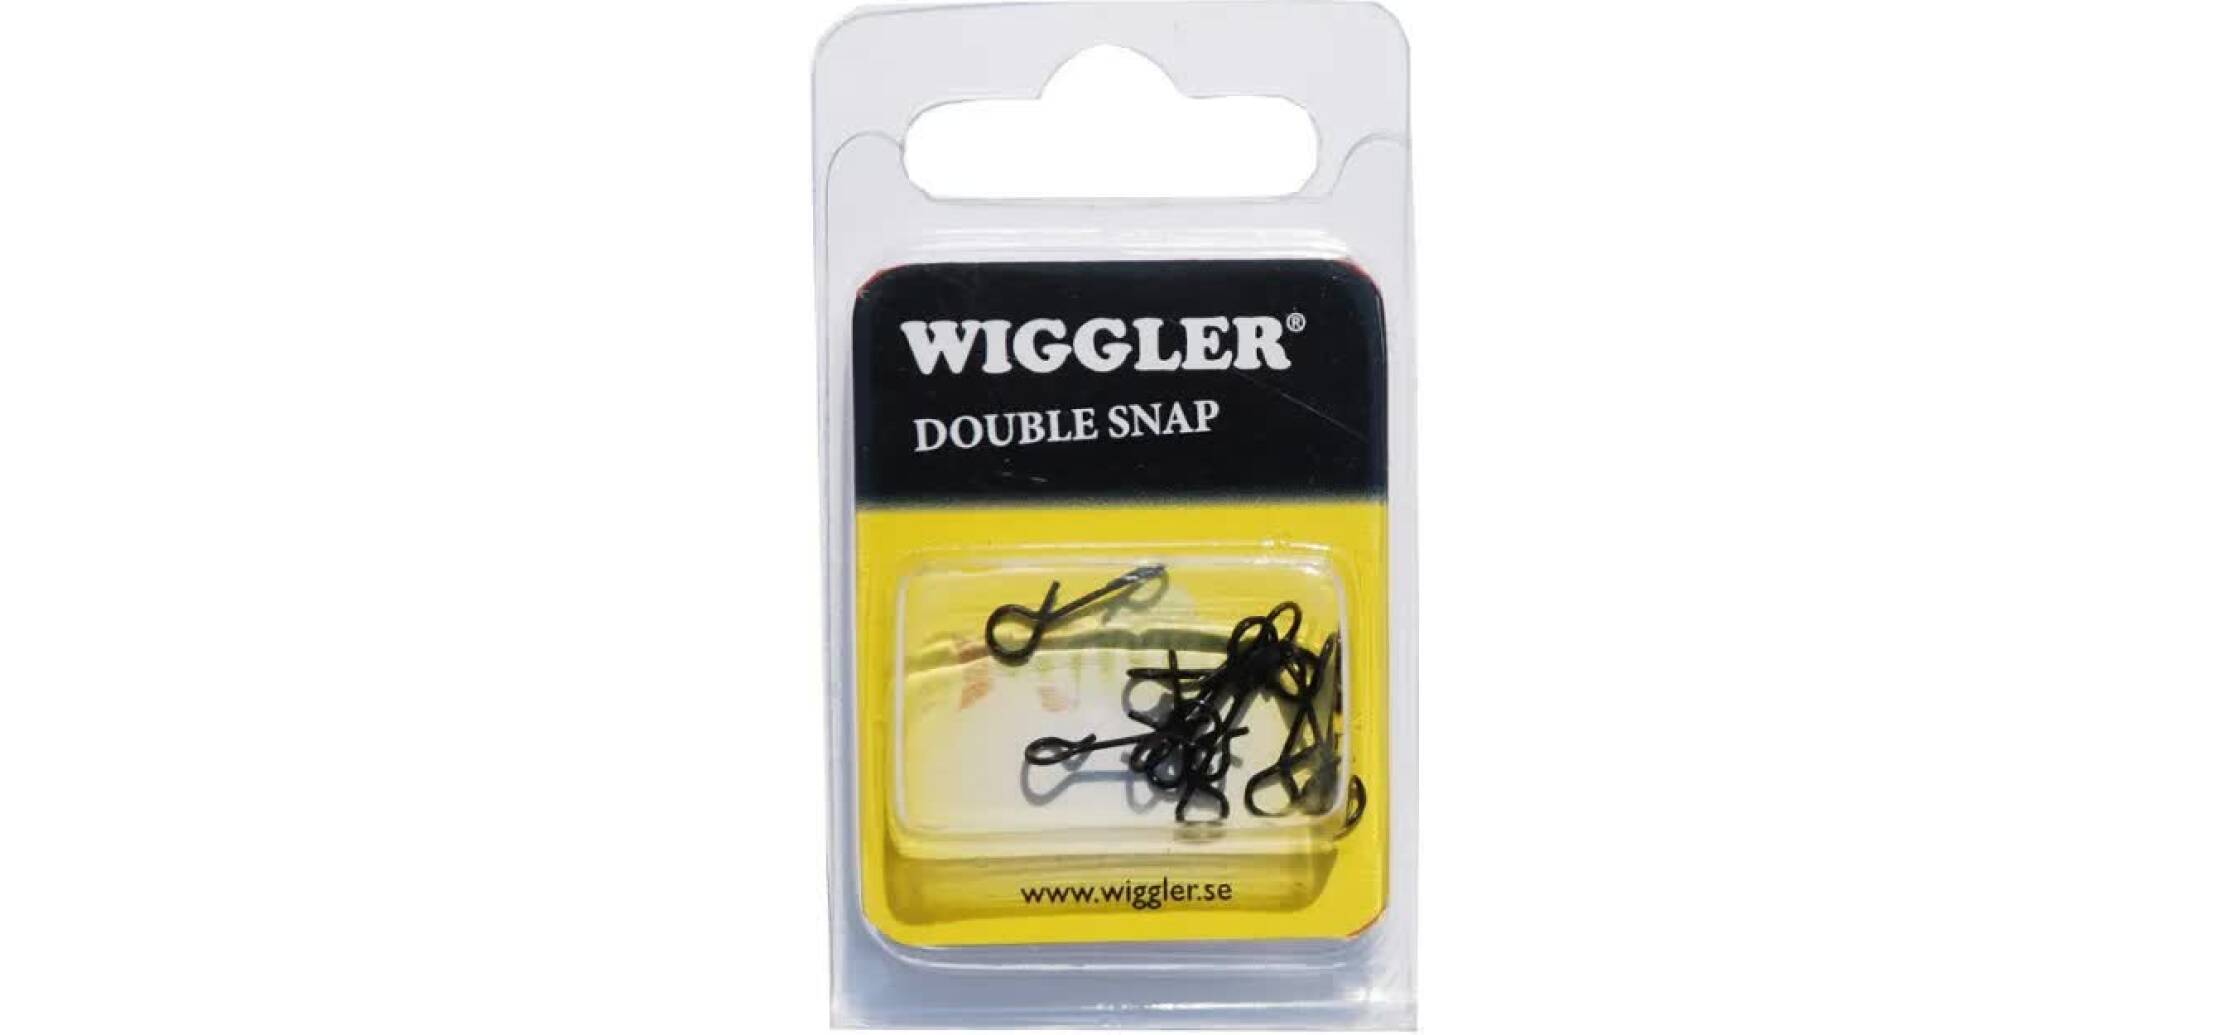 Wiggler Dubbel Snap är en hake som används vid pimpelfiske och är mycket populär att sätta emellan vertikalpirken och kroken.